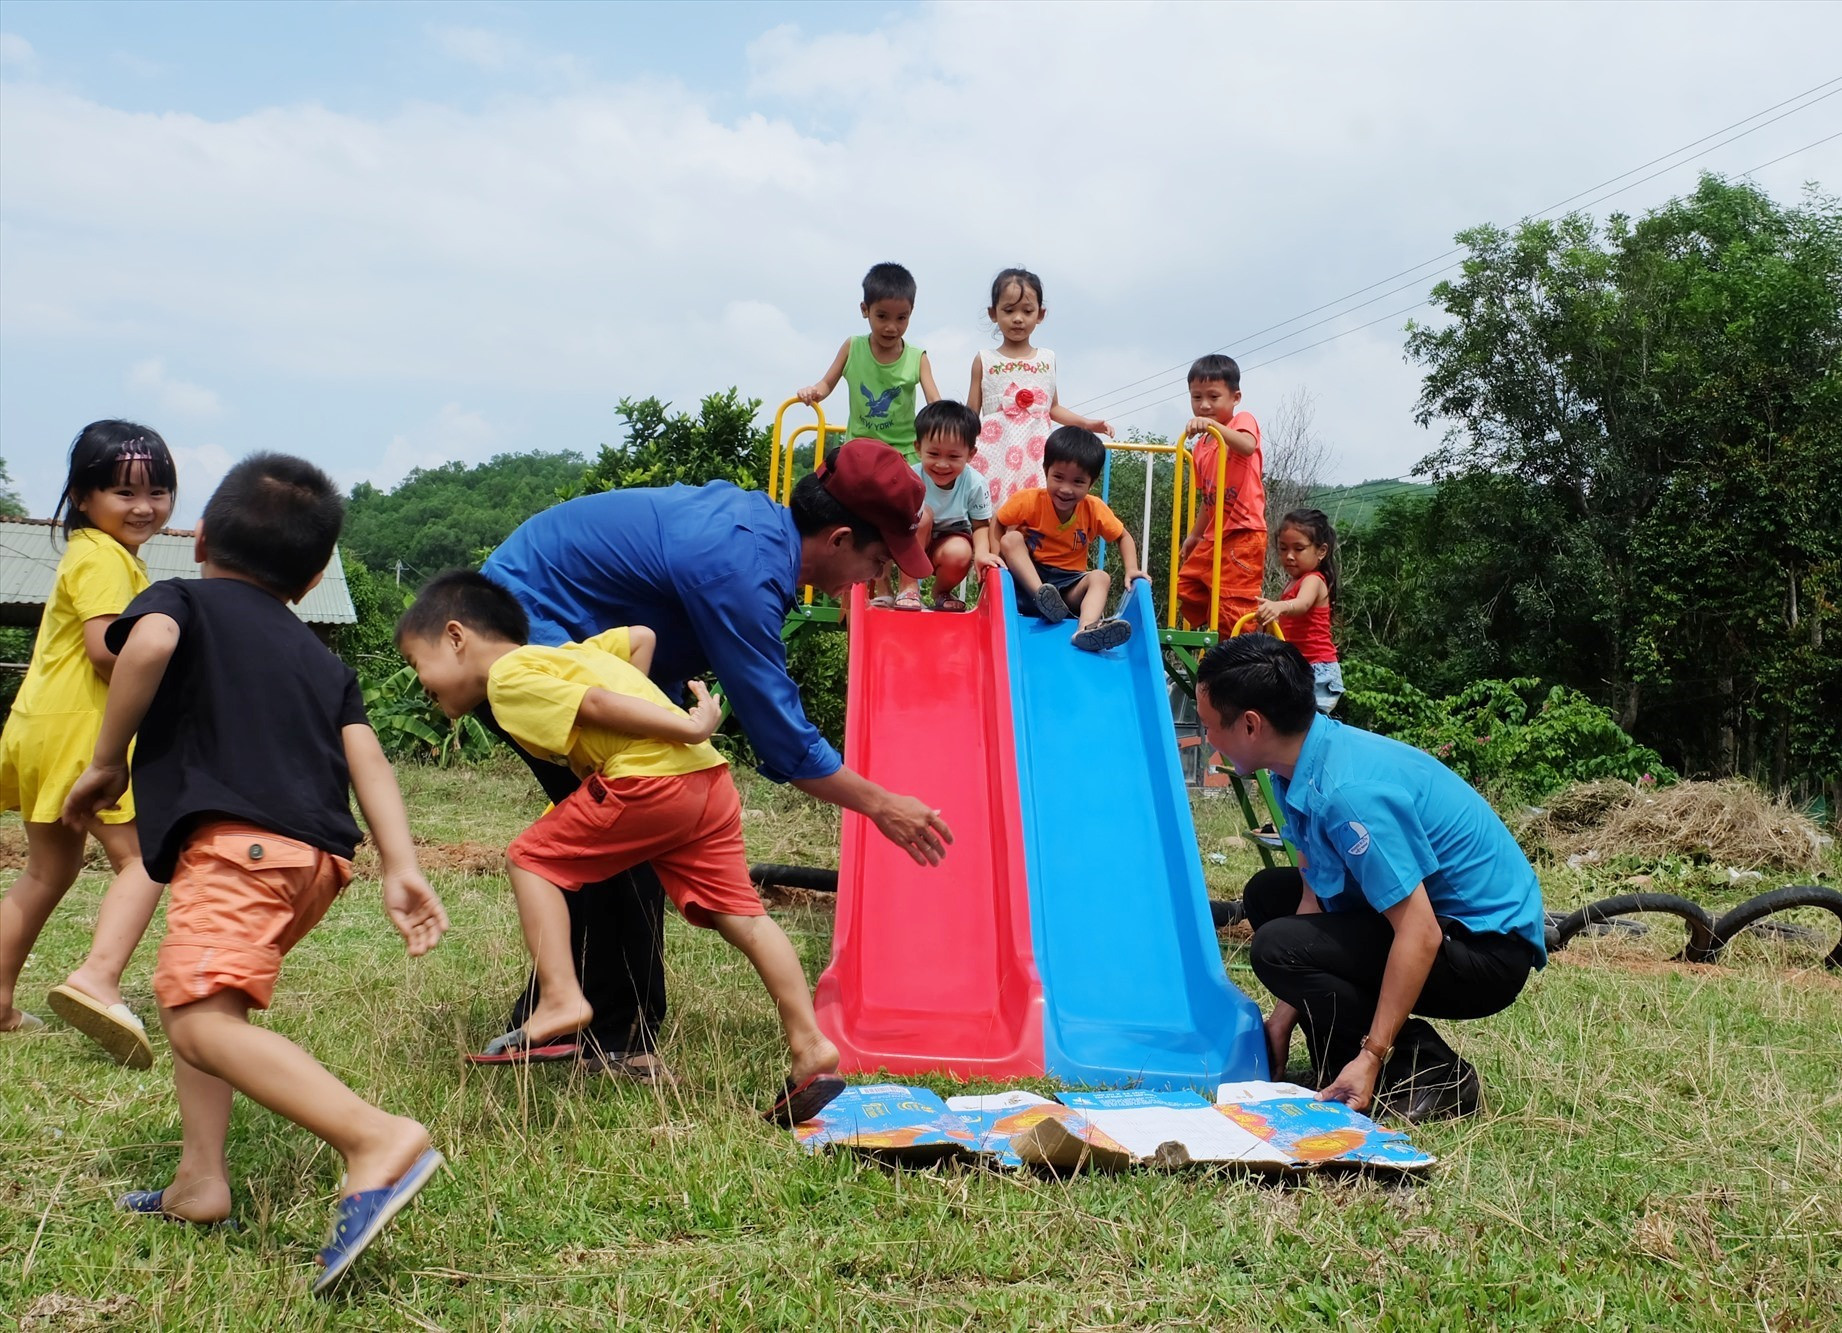 Tháng hành động vì trẻ em tỉnh Quảng Nam năm 2020 với chủ đề “Chung tay bảo vệ trẻ em, phòng chống xâm hại trẻ em”. Ảnh: A.B